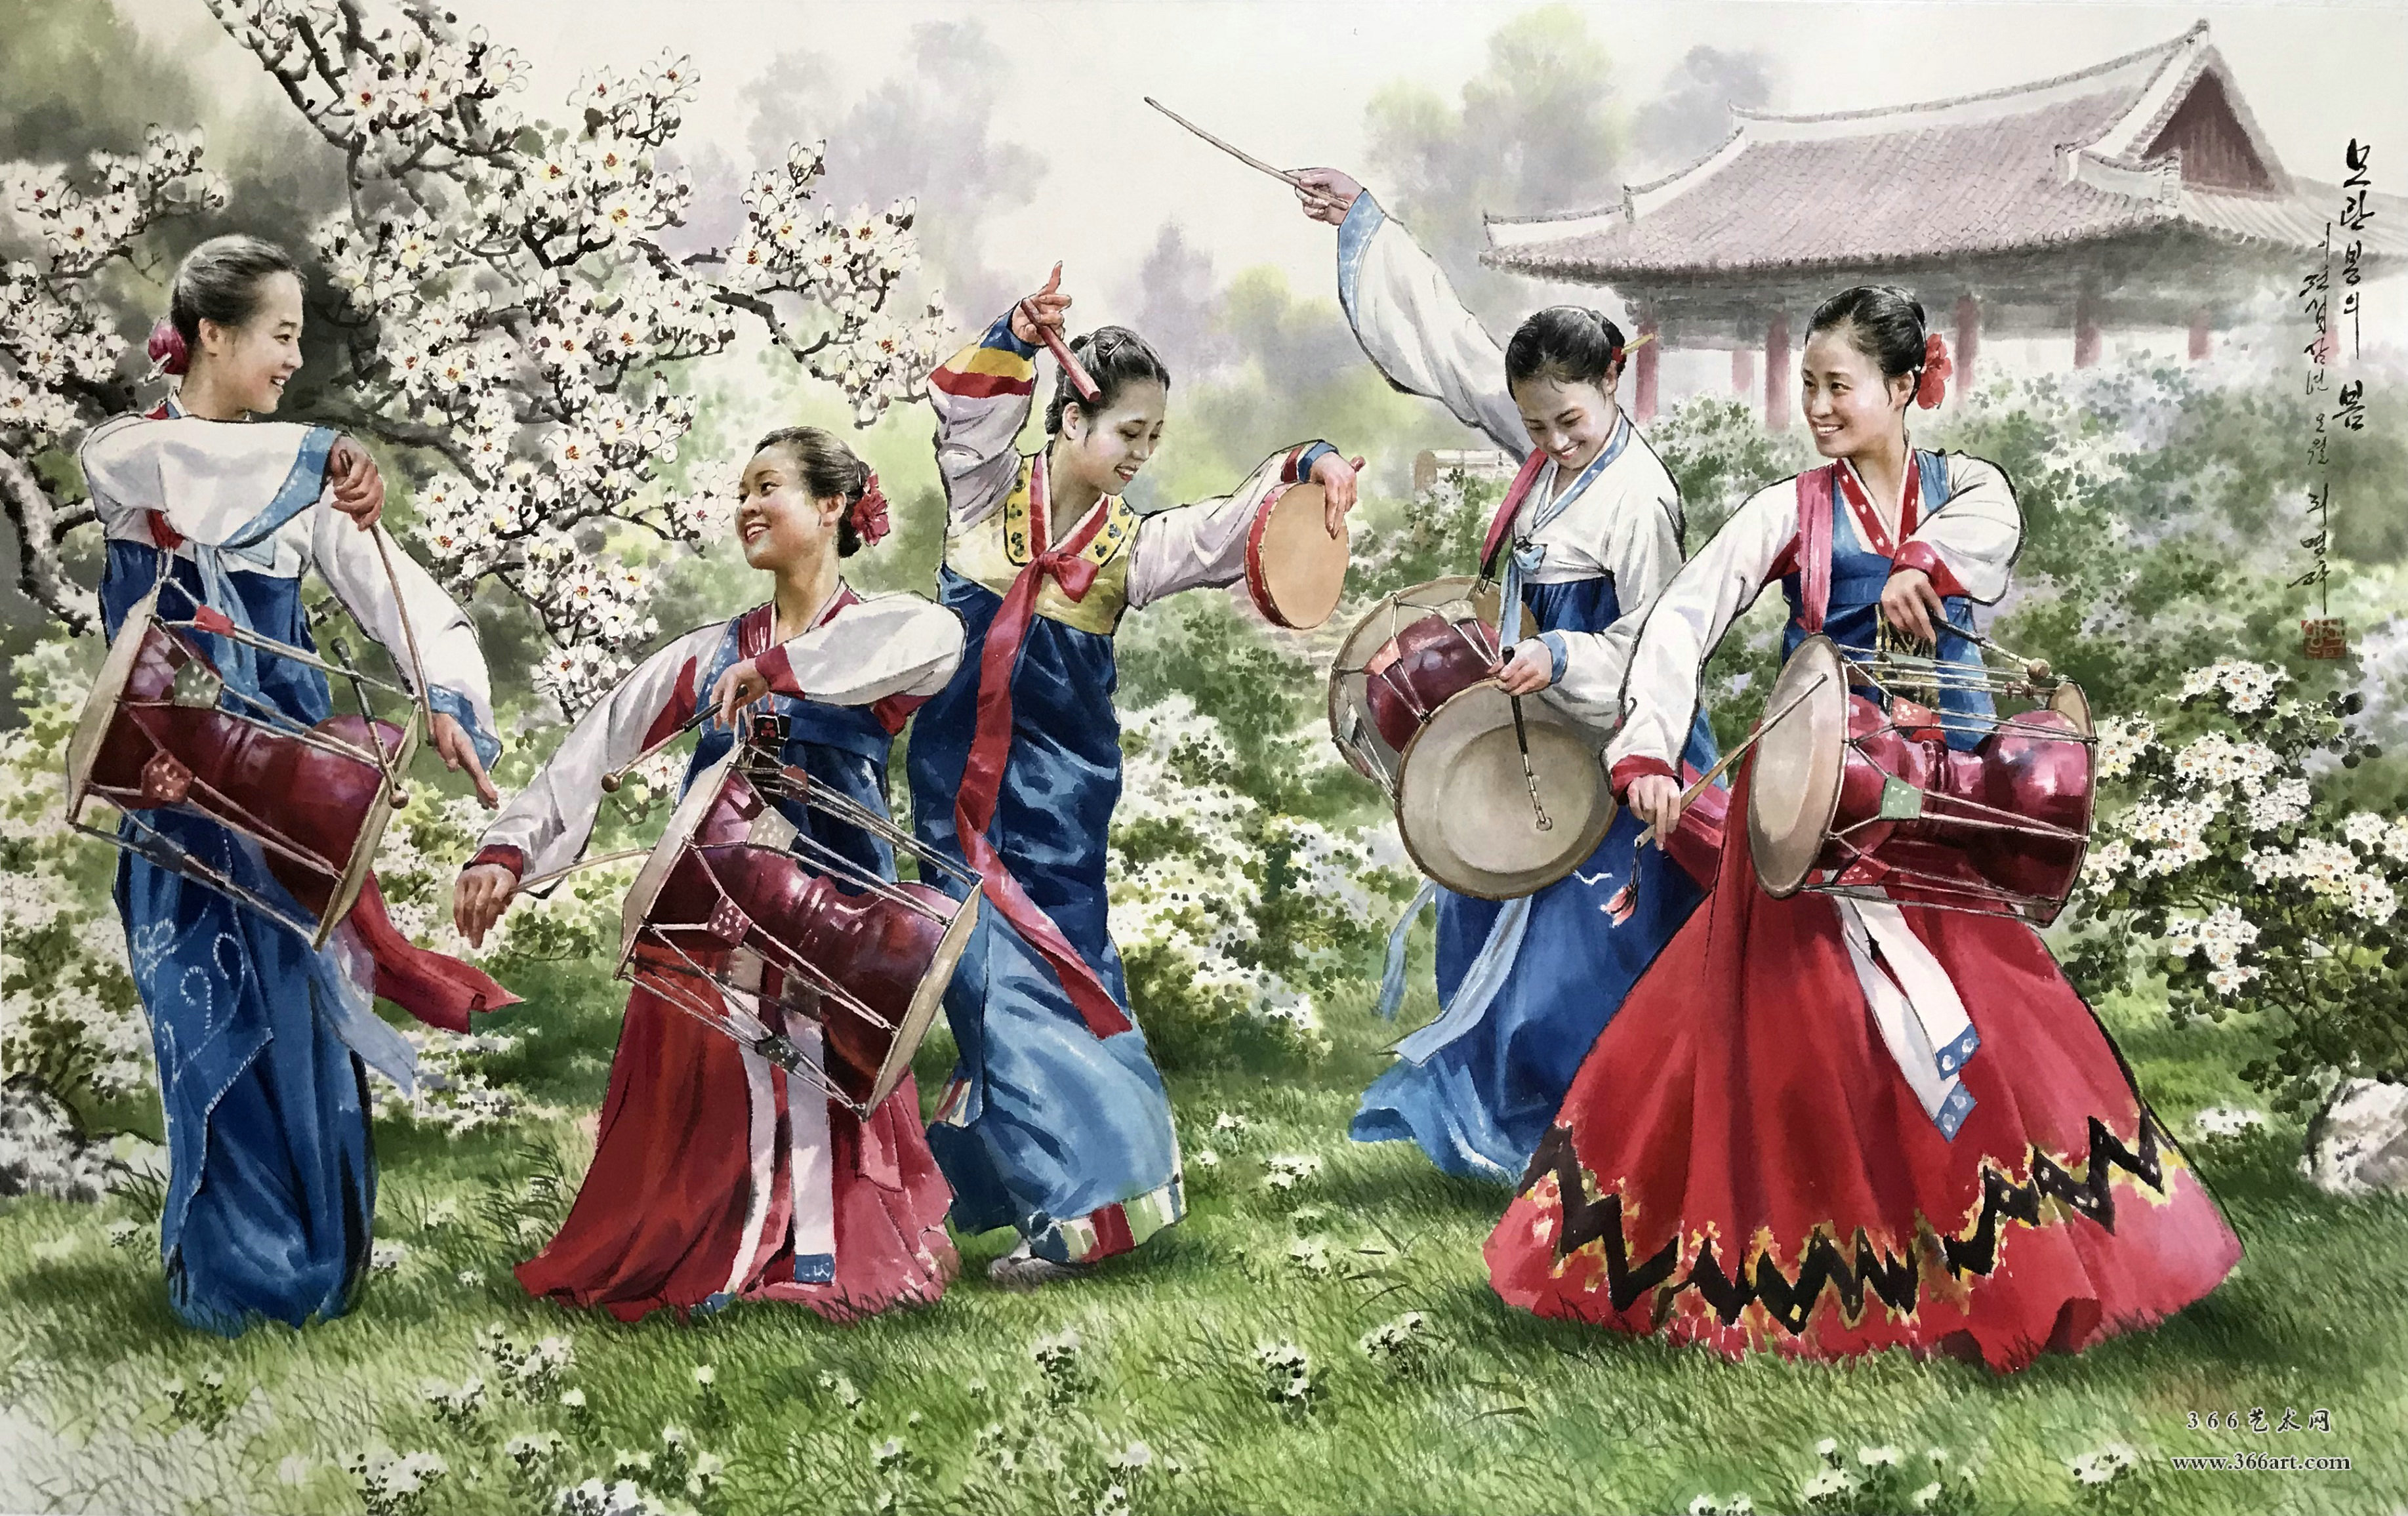 【朝鲜画】李明学 木丹峰的春天 2013年 192 x 116cm